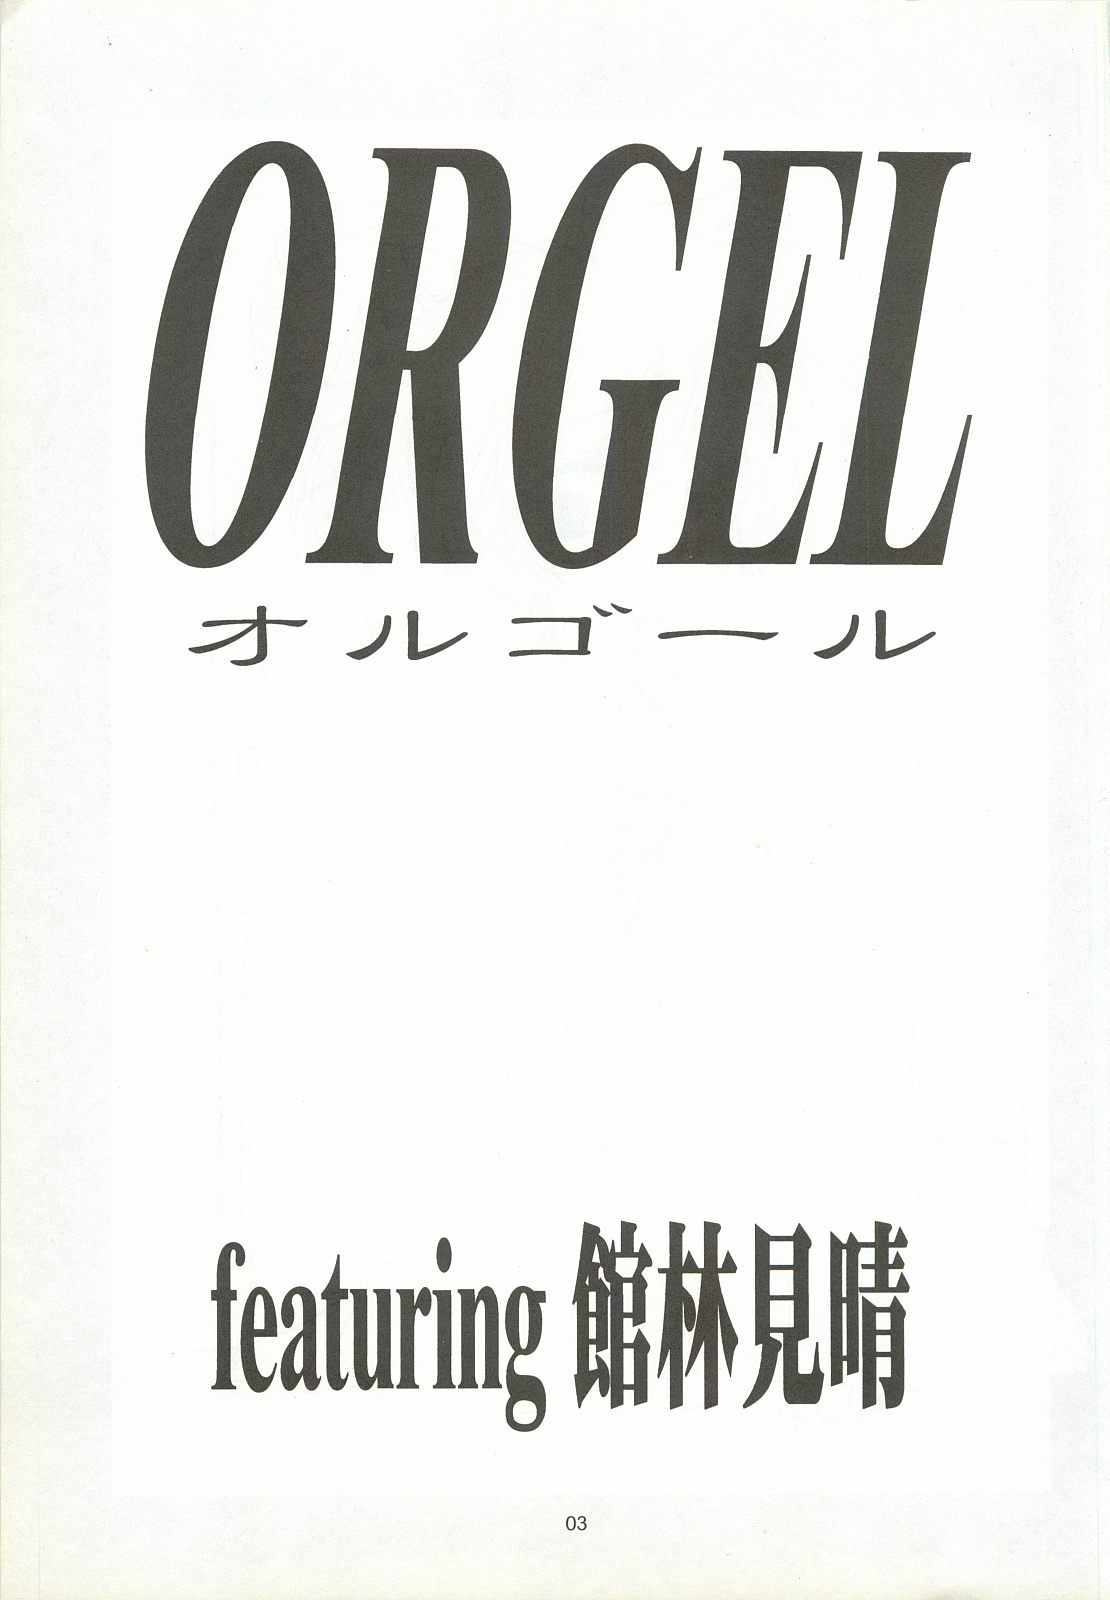 [致命傷 (弥舞秀人)] ORGEL featuring 館林見晴 (ときめきメモリアル)